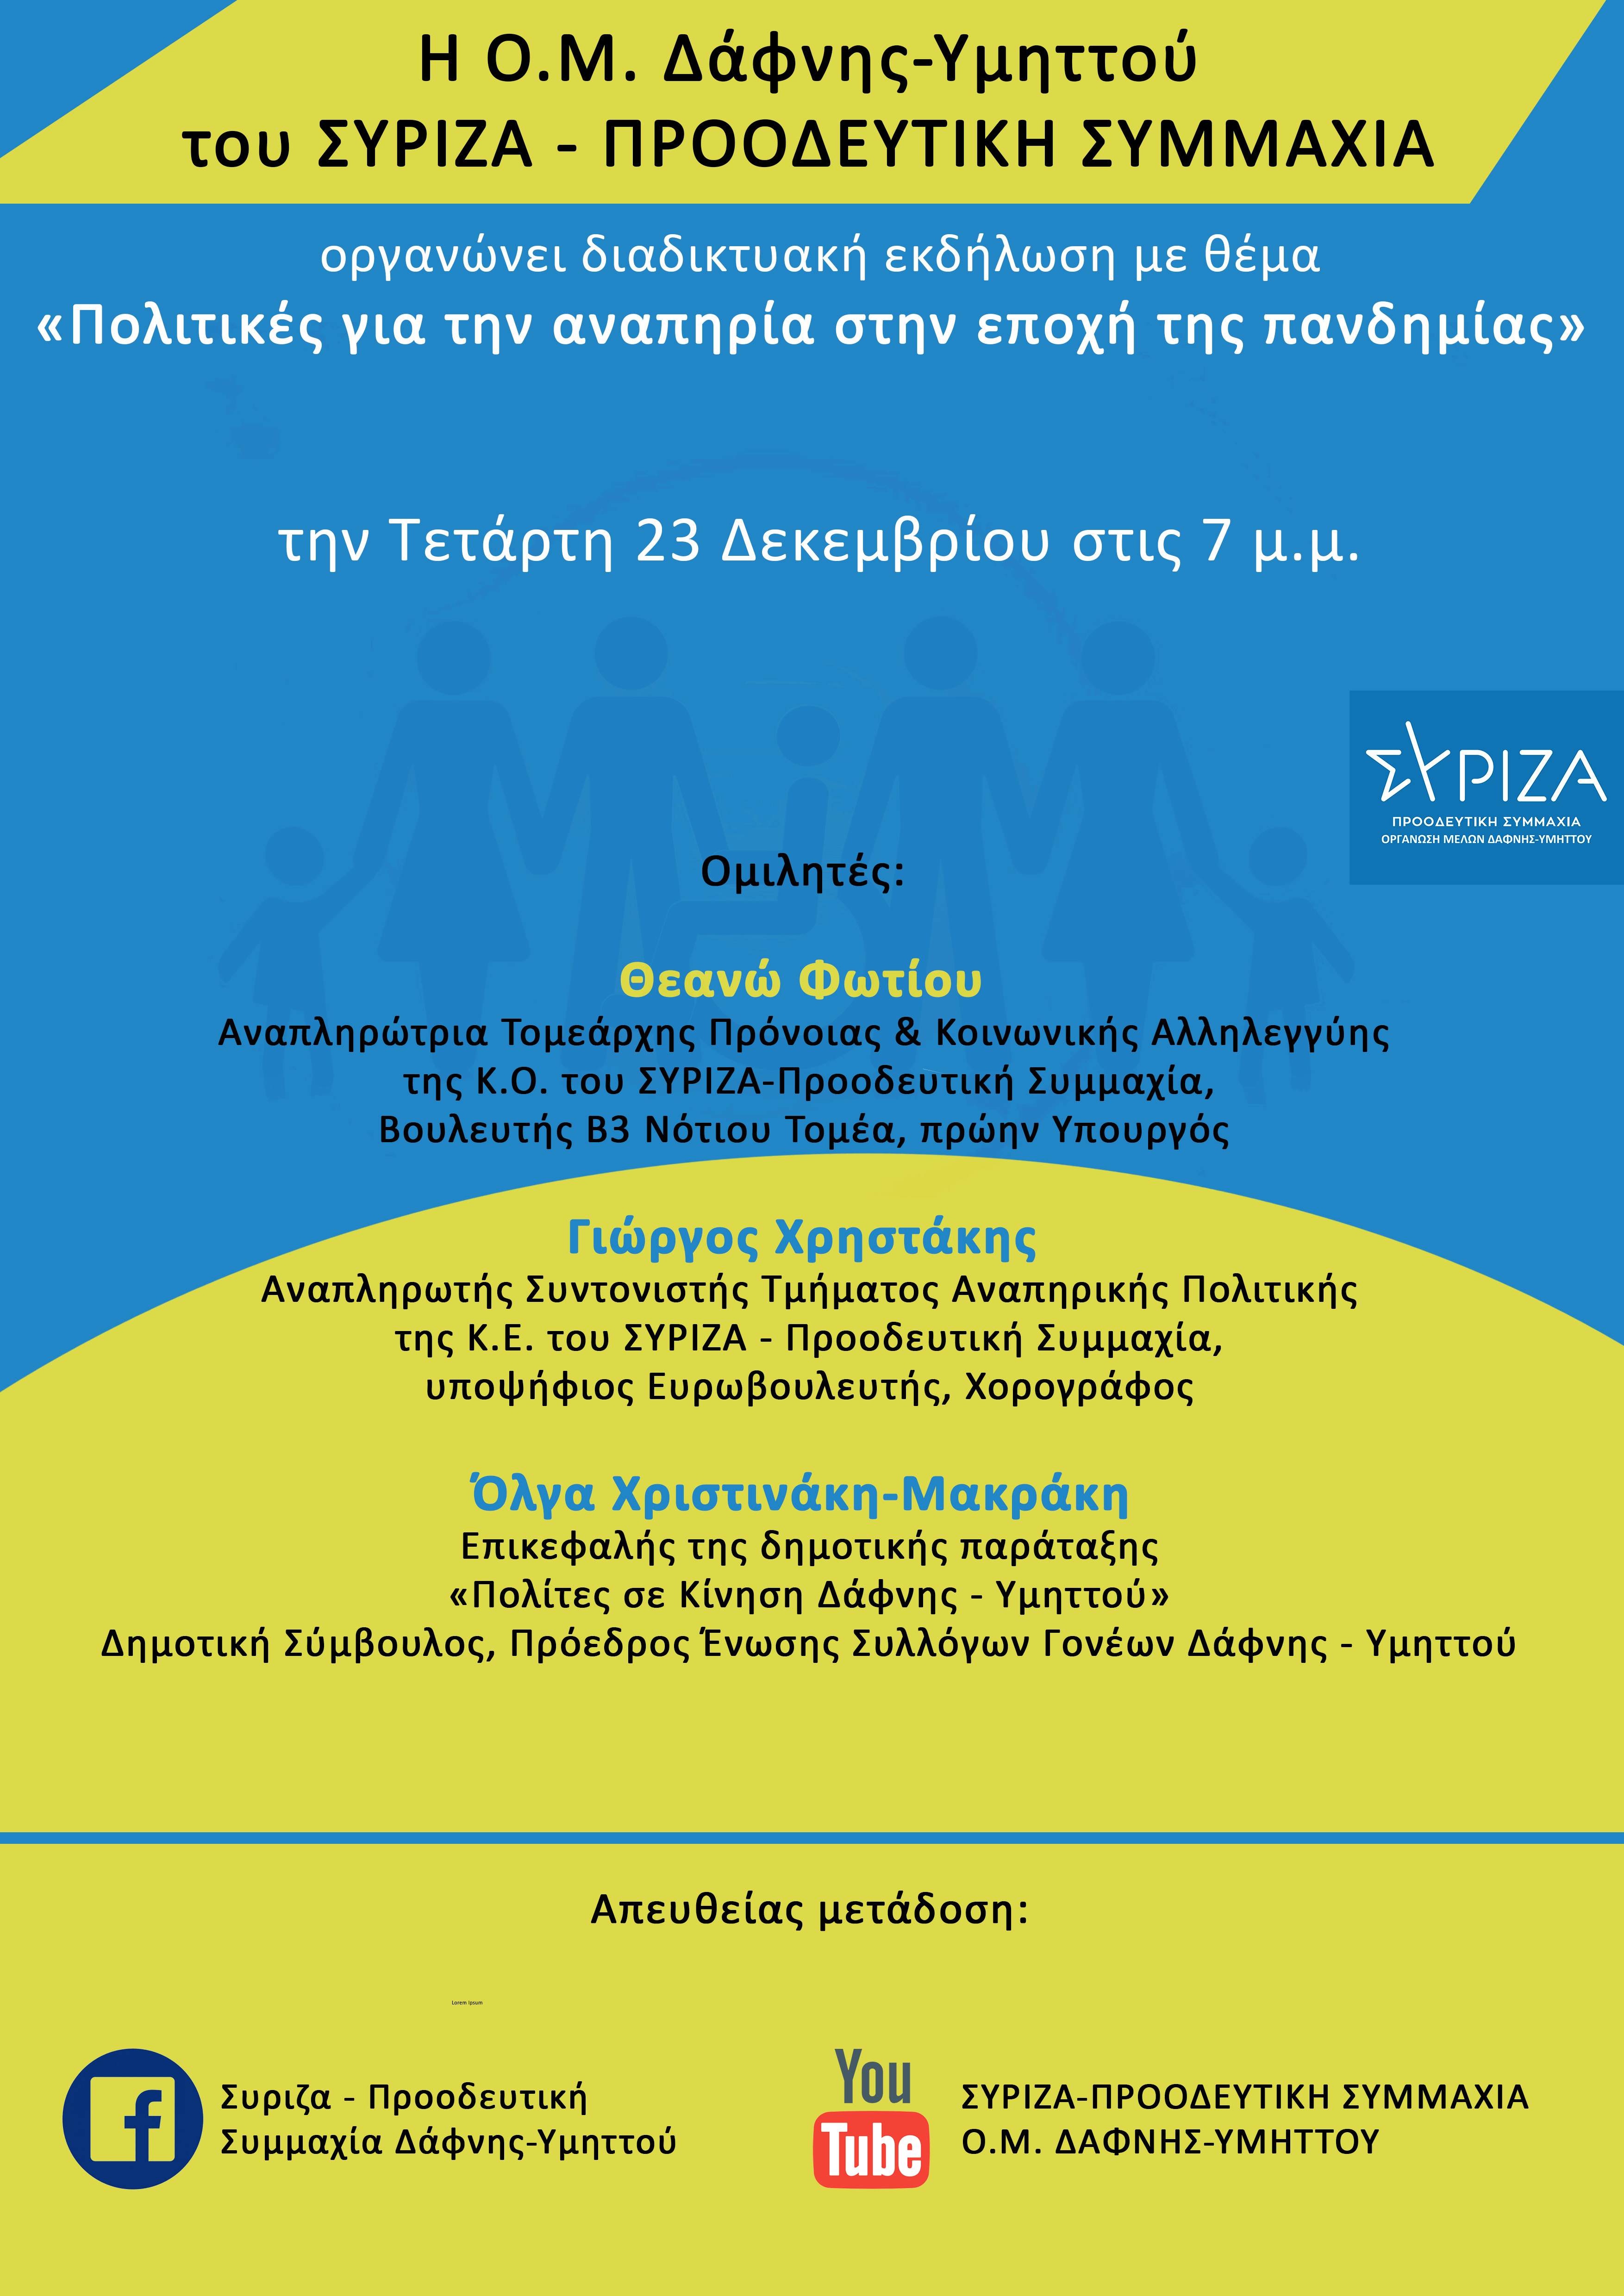 Διαδικτυακή εκδήλωση της ΟΜ ΣΥΡΙΖΑ-Π.Σ. Δάφνης Υμηττού με θέμα : «Πολιτικές για την αναπηρία στην εποχή της πανδημίας»